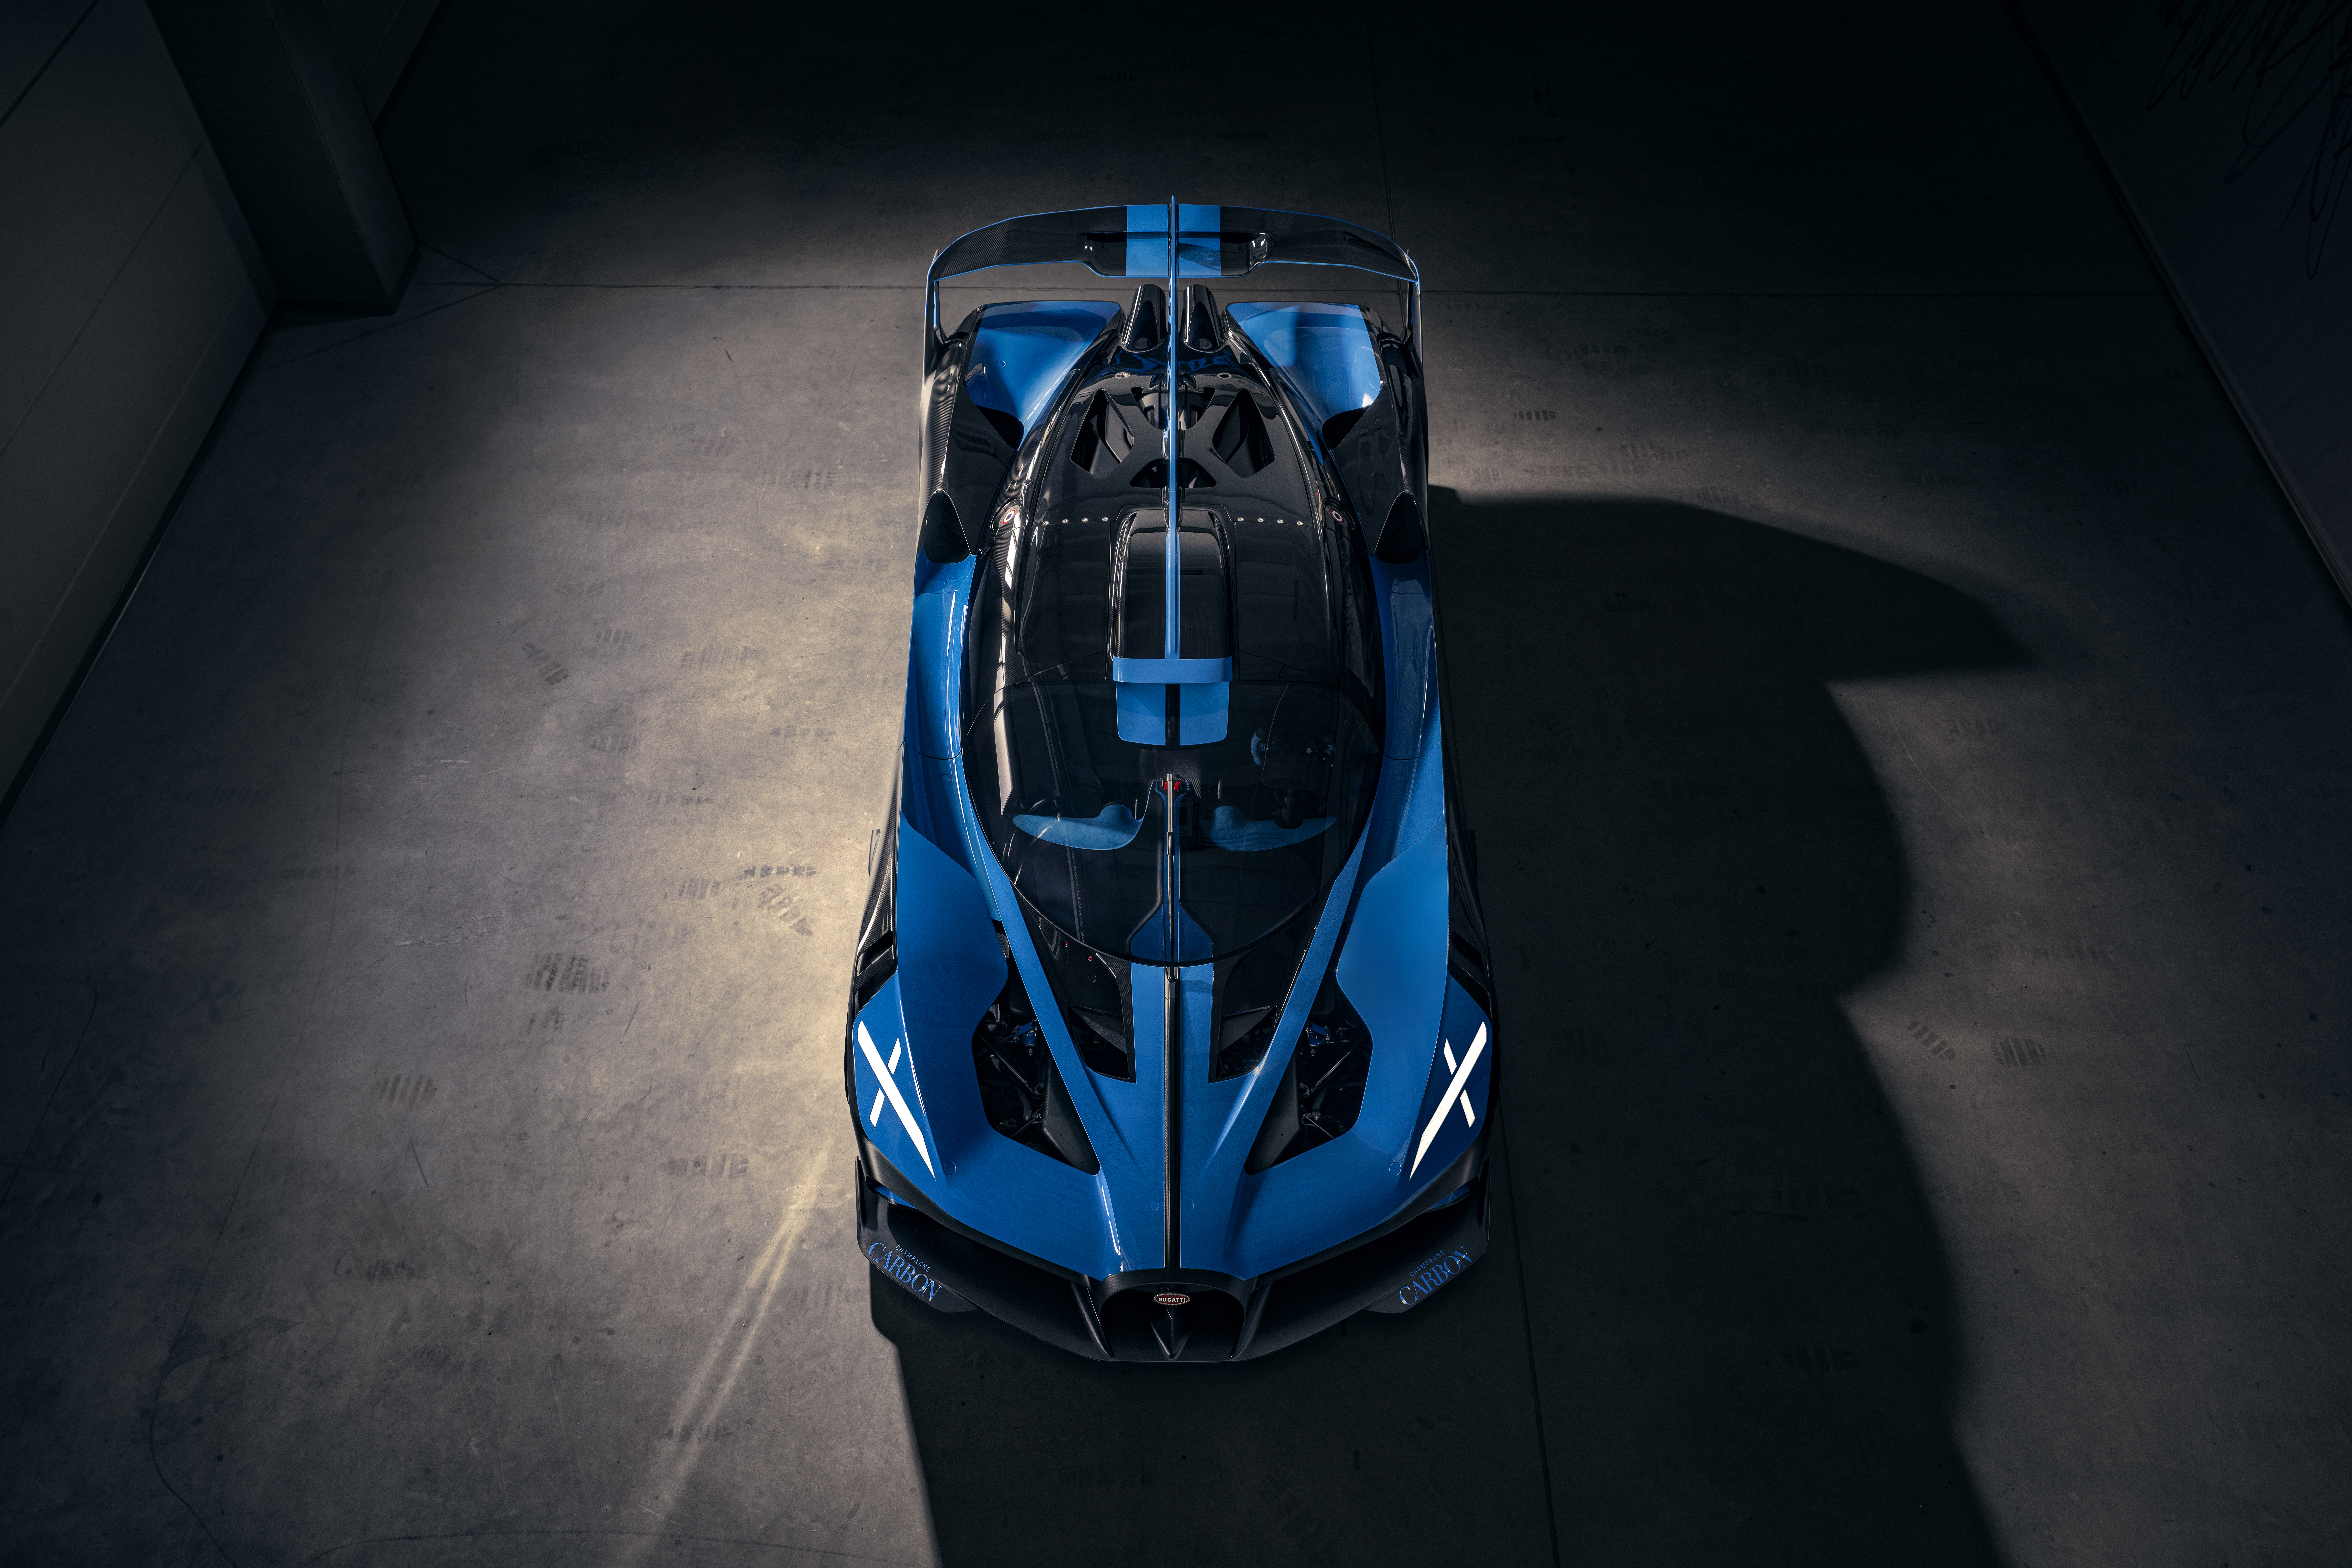 Vehicles Bugatti Bolide HD Wallpaper | Background Image